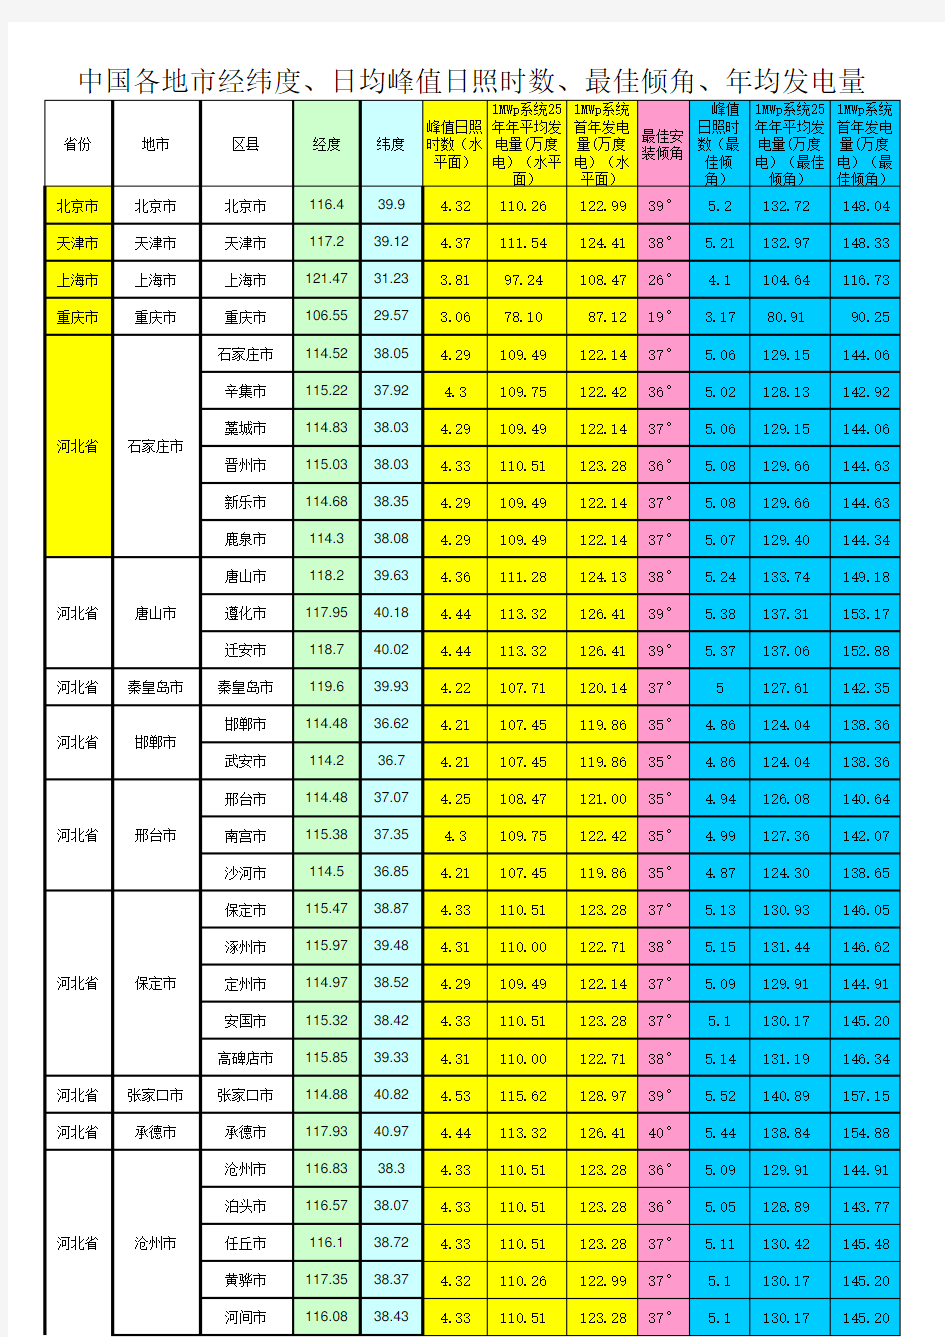 中国各地市经纬度、日均峰值日照时数、年均发电量信息参考表(NASA)